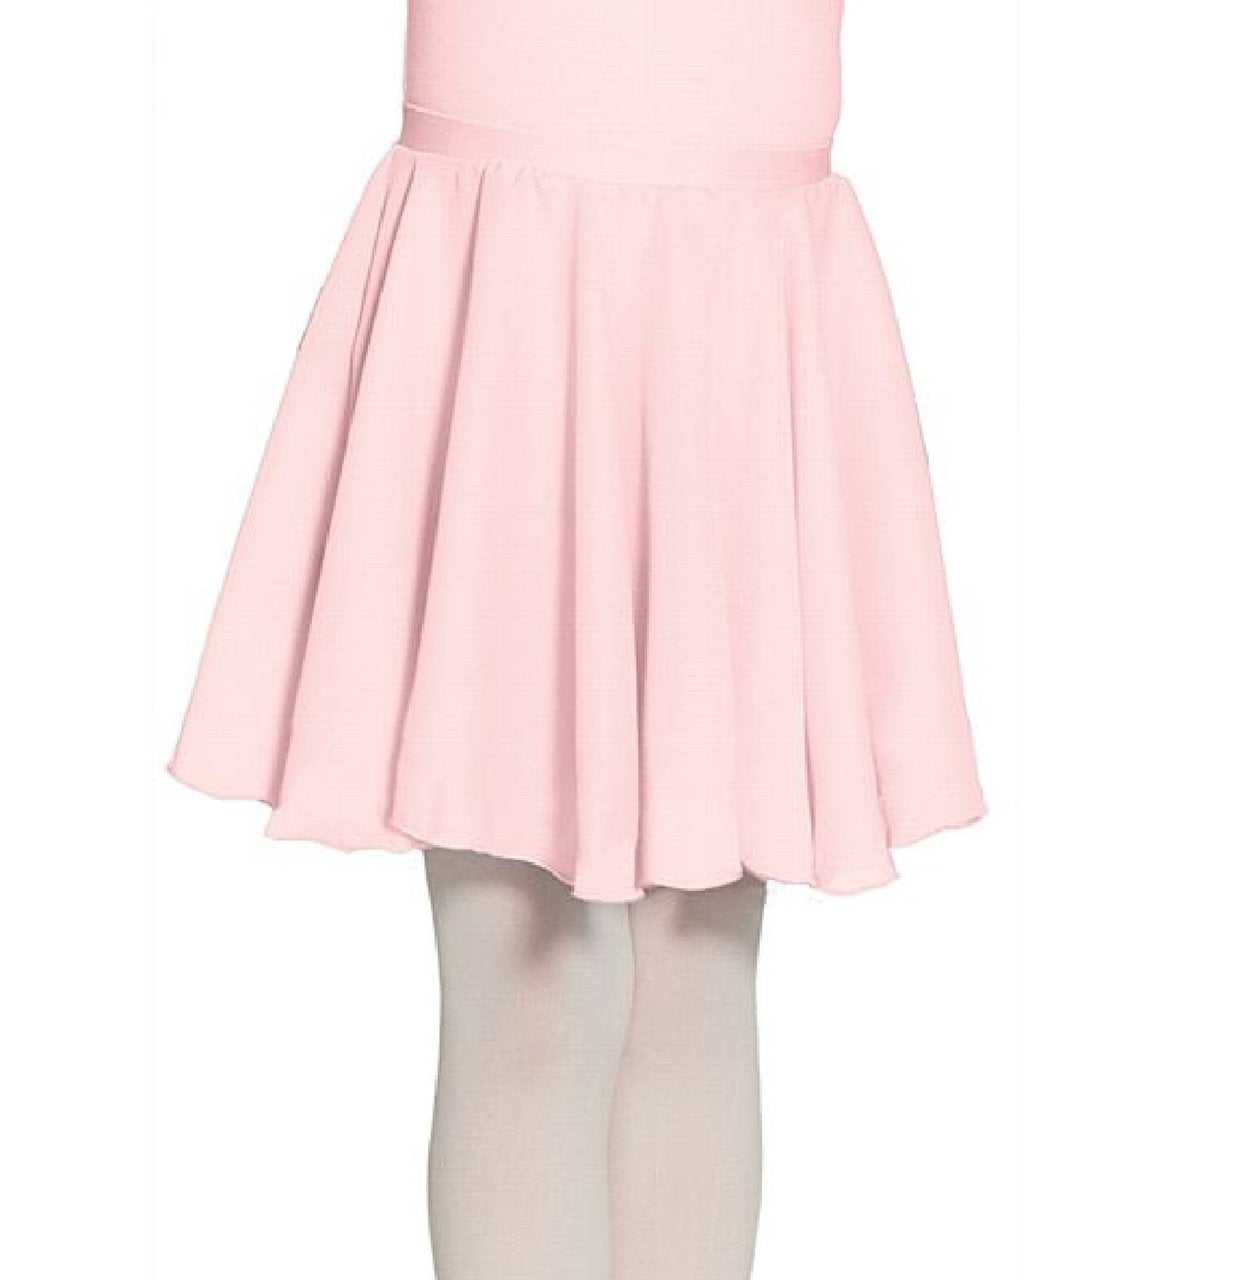 Mondor Ballet Skirt 16207 - Pink